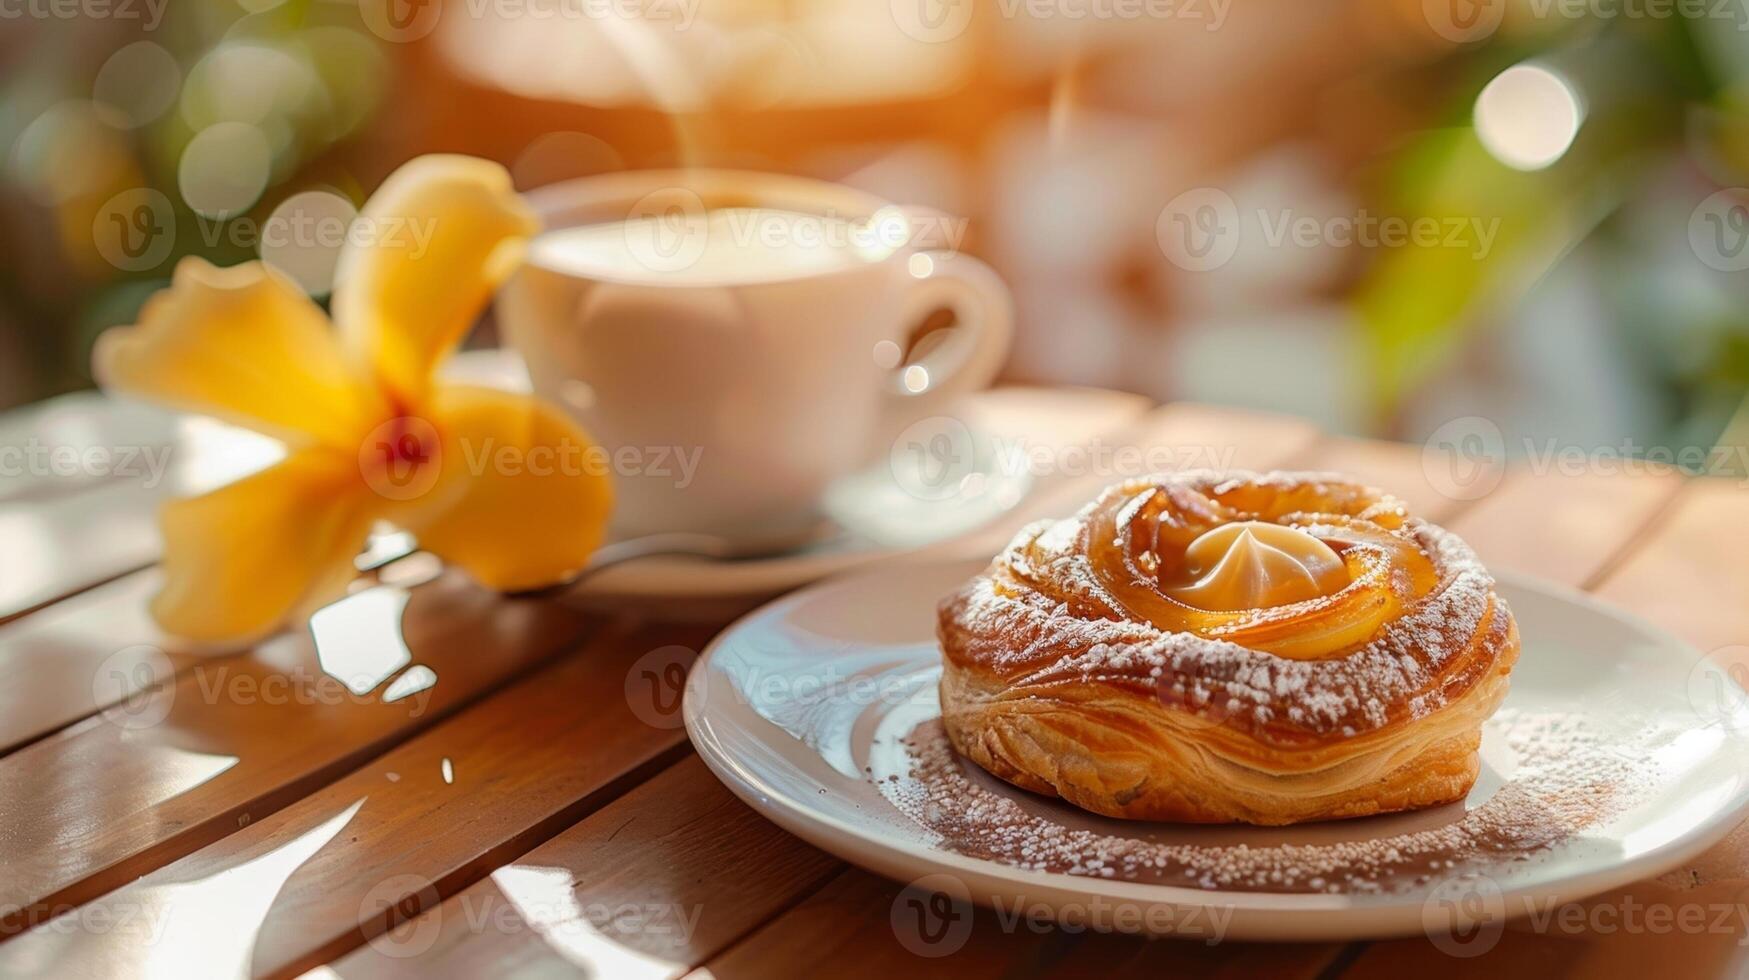 élever votre petit déjeuner Jeu avec une tropical Pâtisserie et café Matin une rencontre fabriqué dans culinaire paradis photo